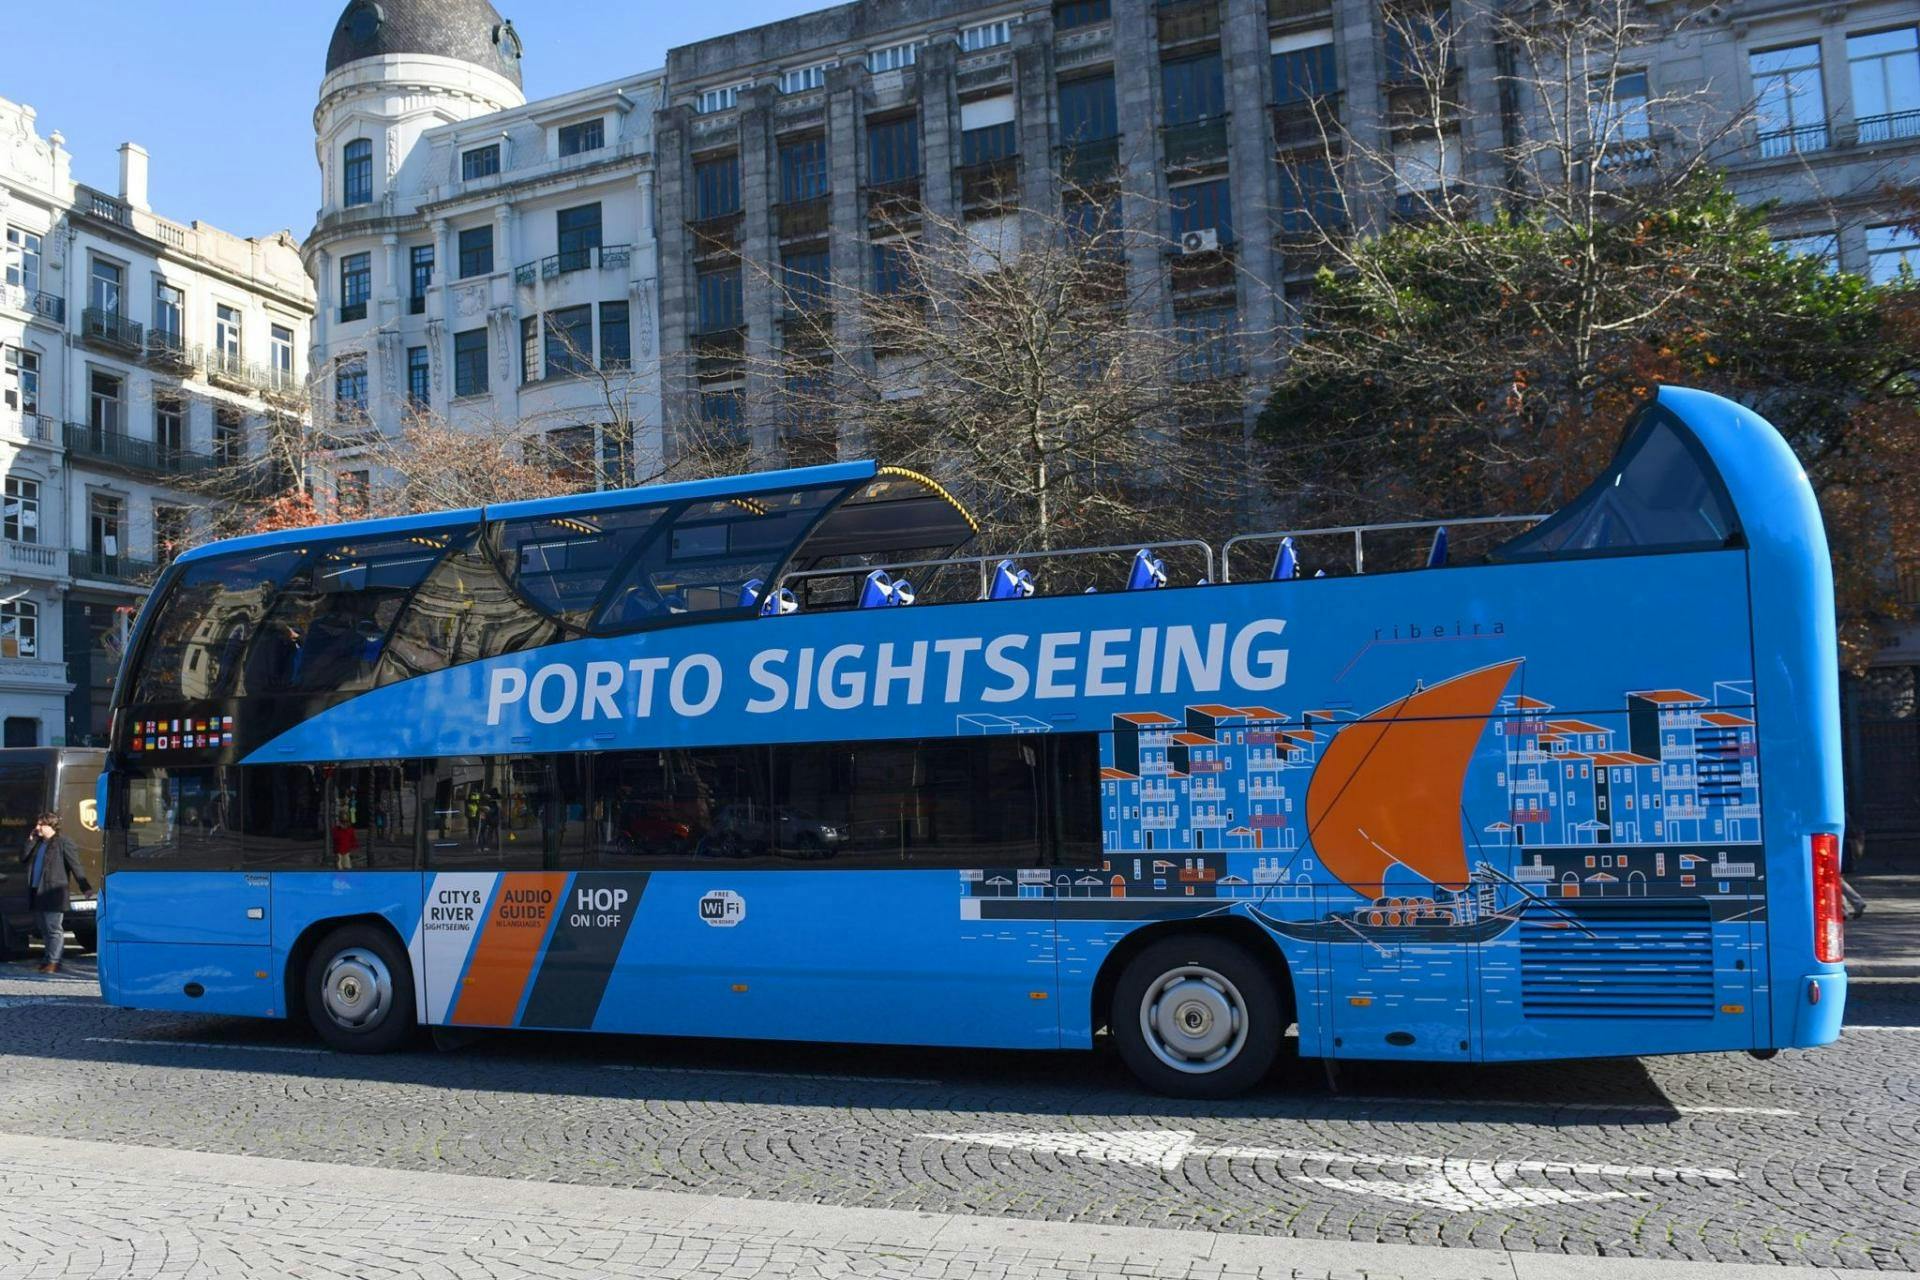 Tour di 48 ore in autobus hop-on hop-off di Porto con visita alle cantine